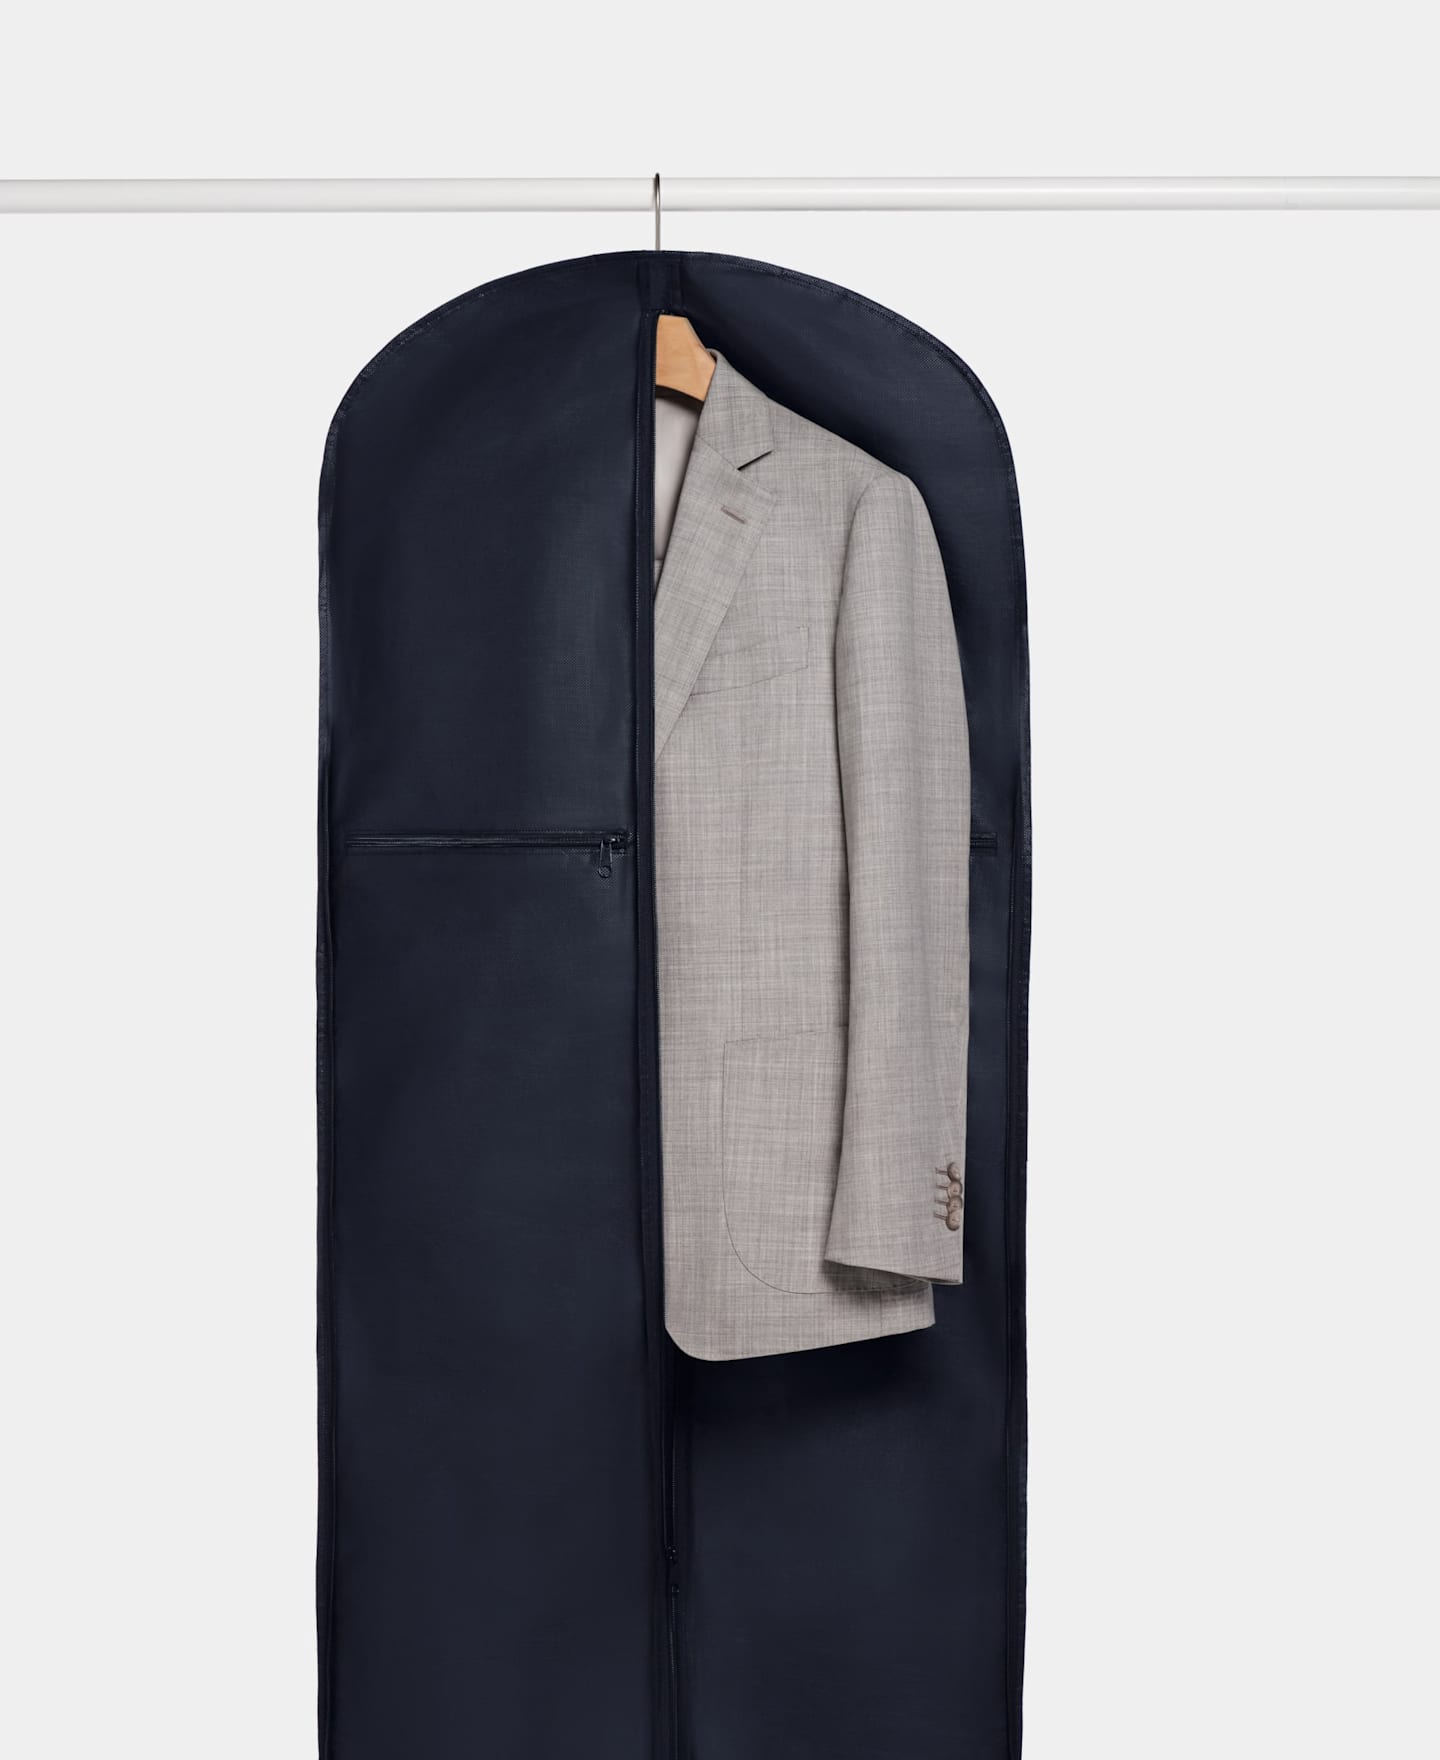 Giacca da abito grigio chiaro riposta in una borsa porta abiti blu